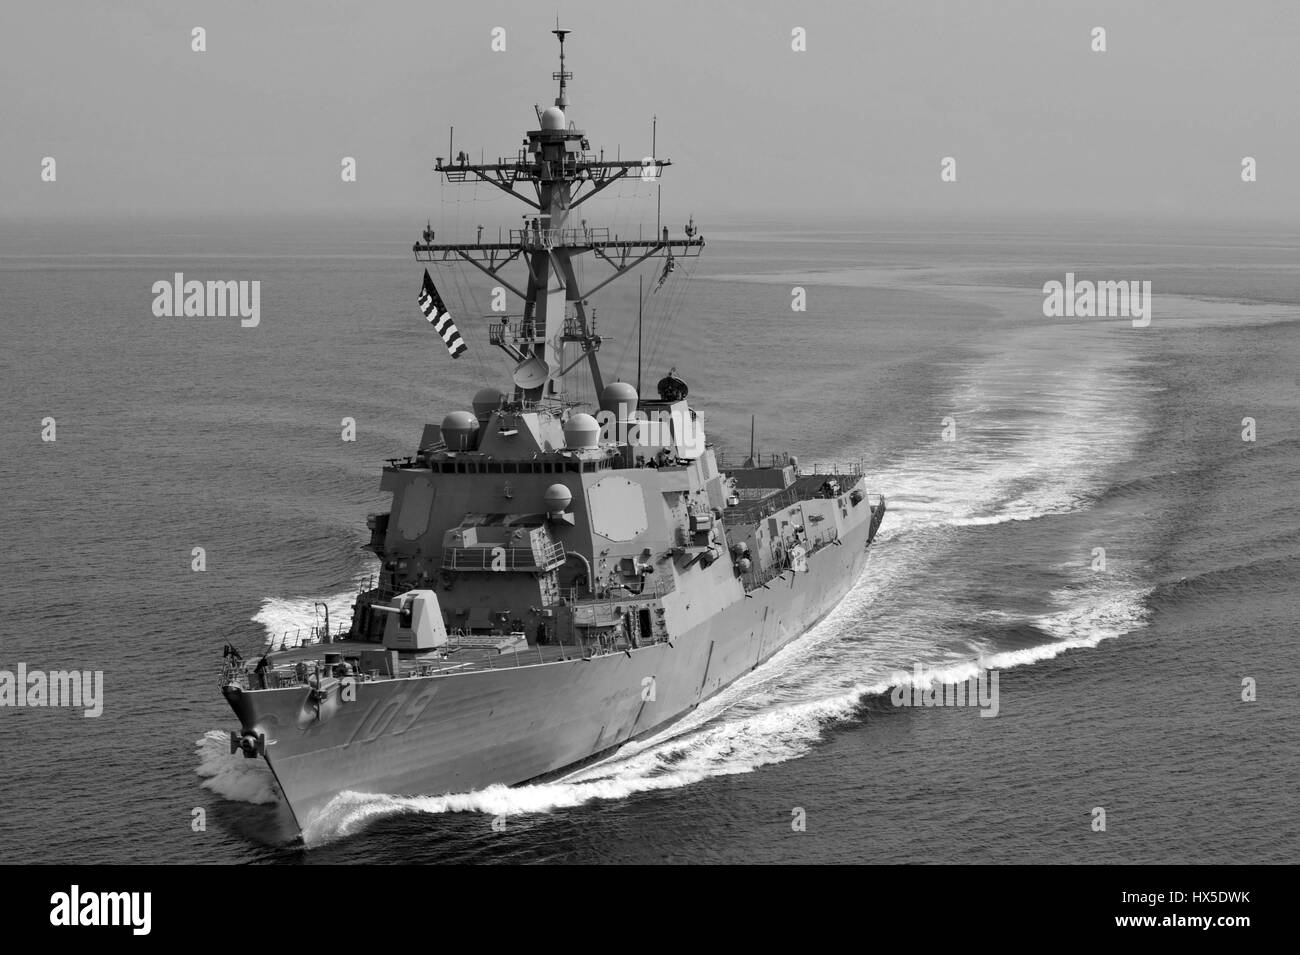 Missiles guidés USS Jason Dunham (DDG 109) sur l'eau de la 5e flotte américaine salon od 2013. responsabilité Image courtoisie Deven B. King/US Navy. Banque D'Images